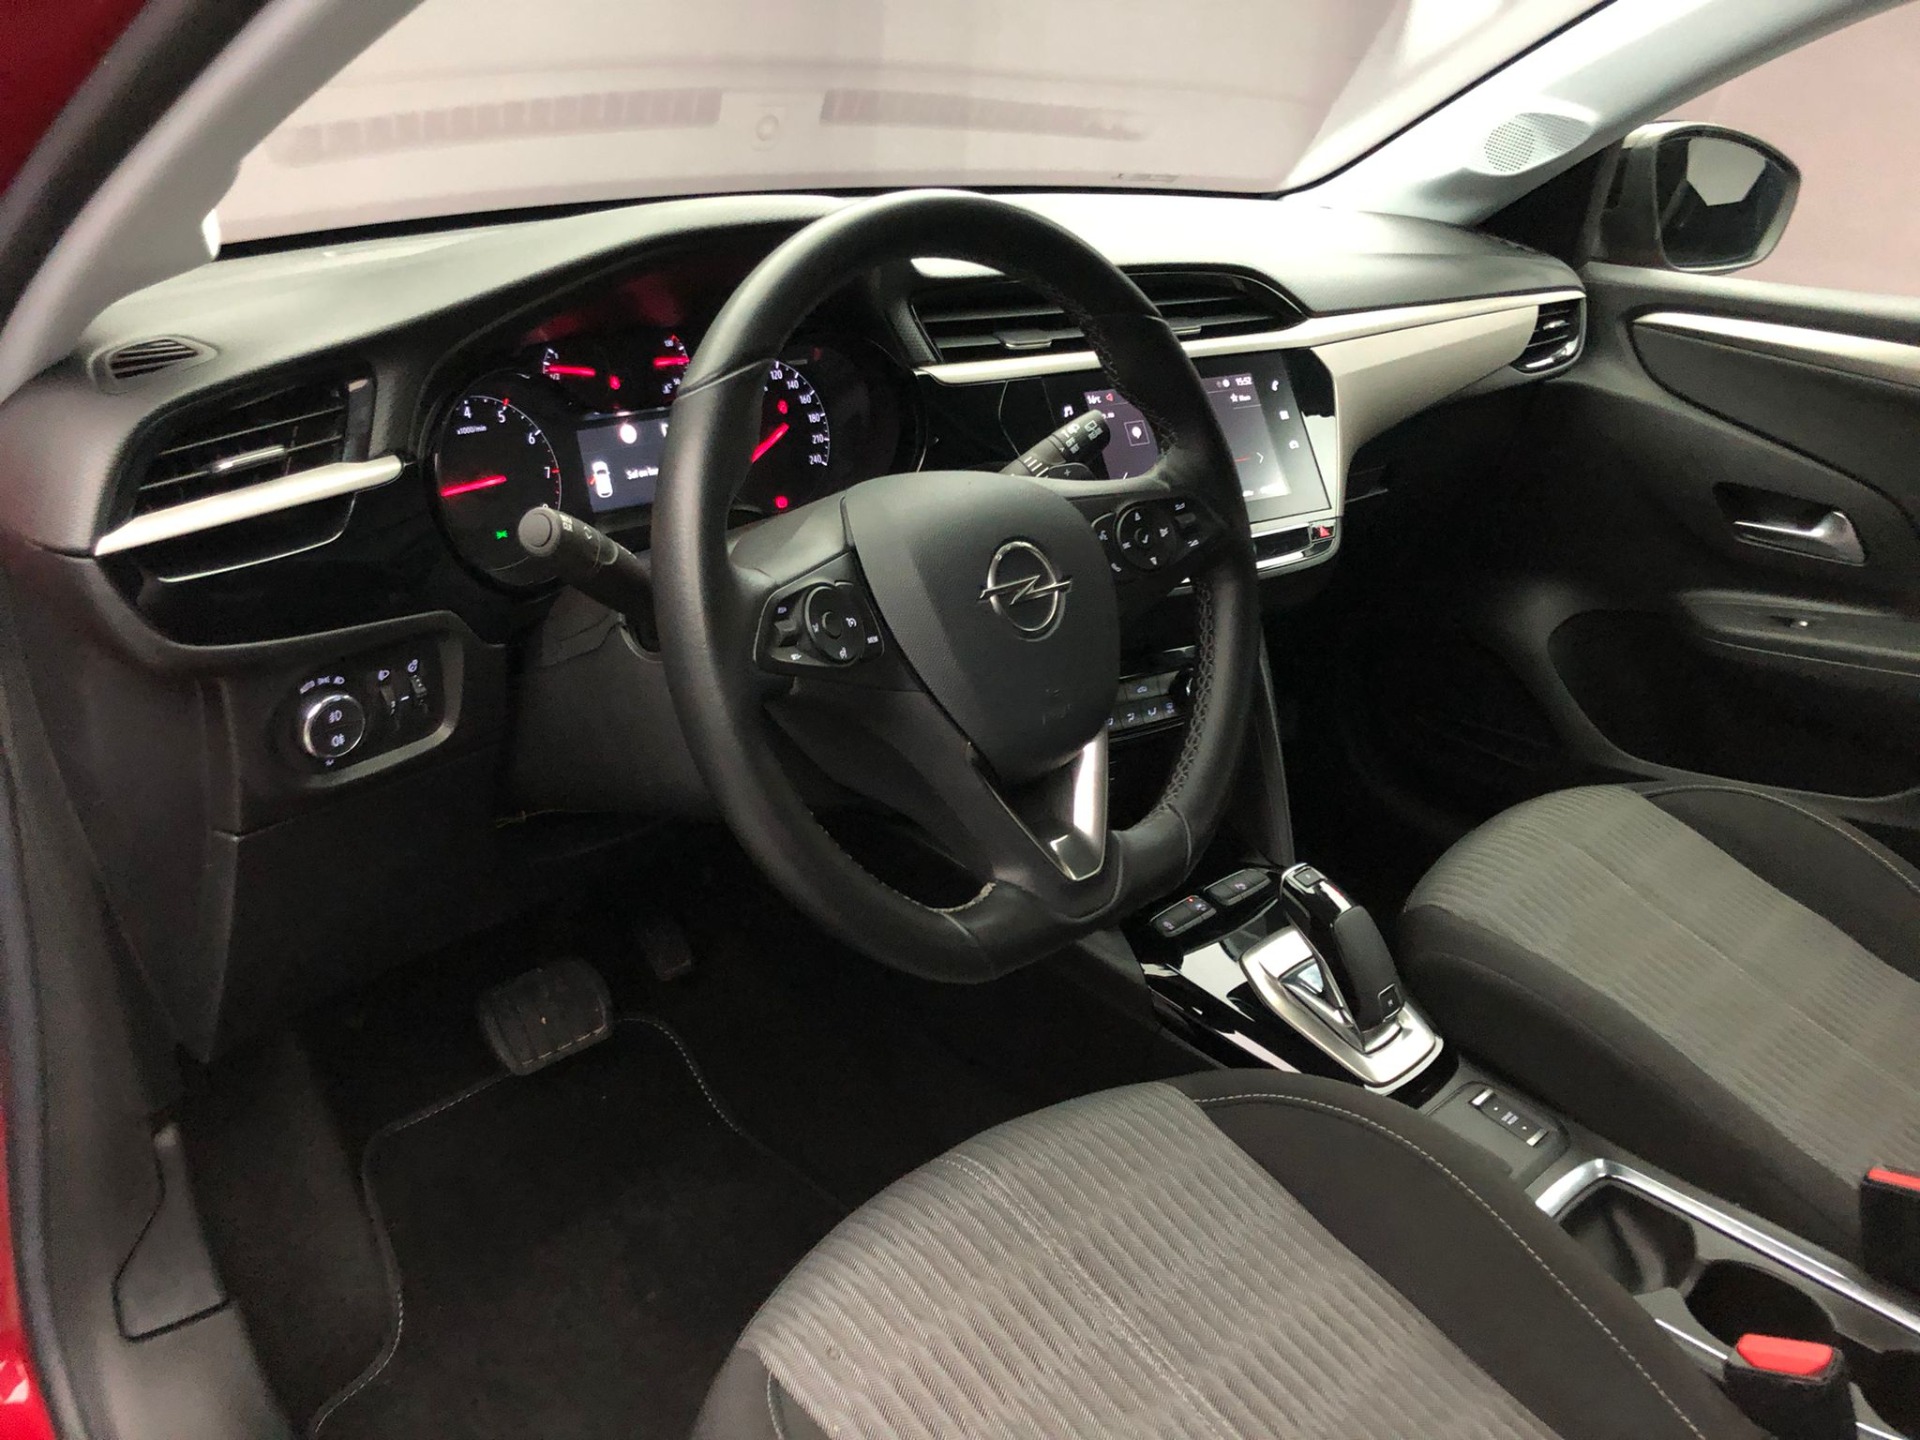 2021 Boyasız Otomatik ÇiftRenk Navi Ş.Takip CarPlay-14